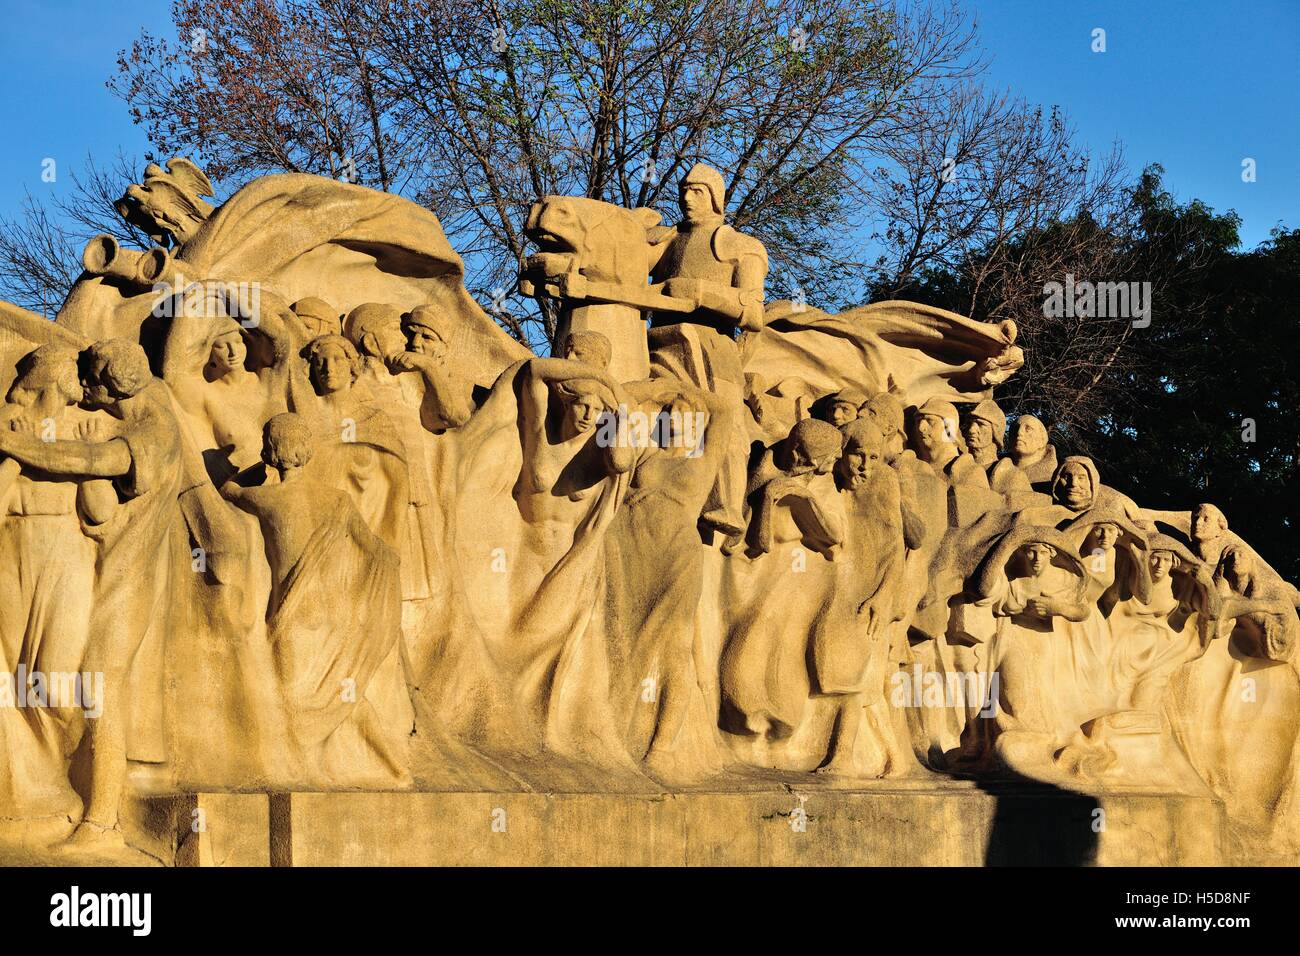 La fontaine de temps, par sculpture Lorado Taft est assis à l'extrémité ouest de la Midway Plaisance à Chicago's Washington Park. Chicago, Illinois, USA. Banque D'Images